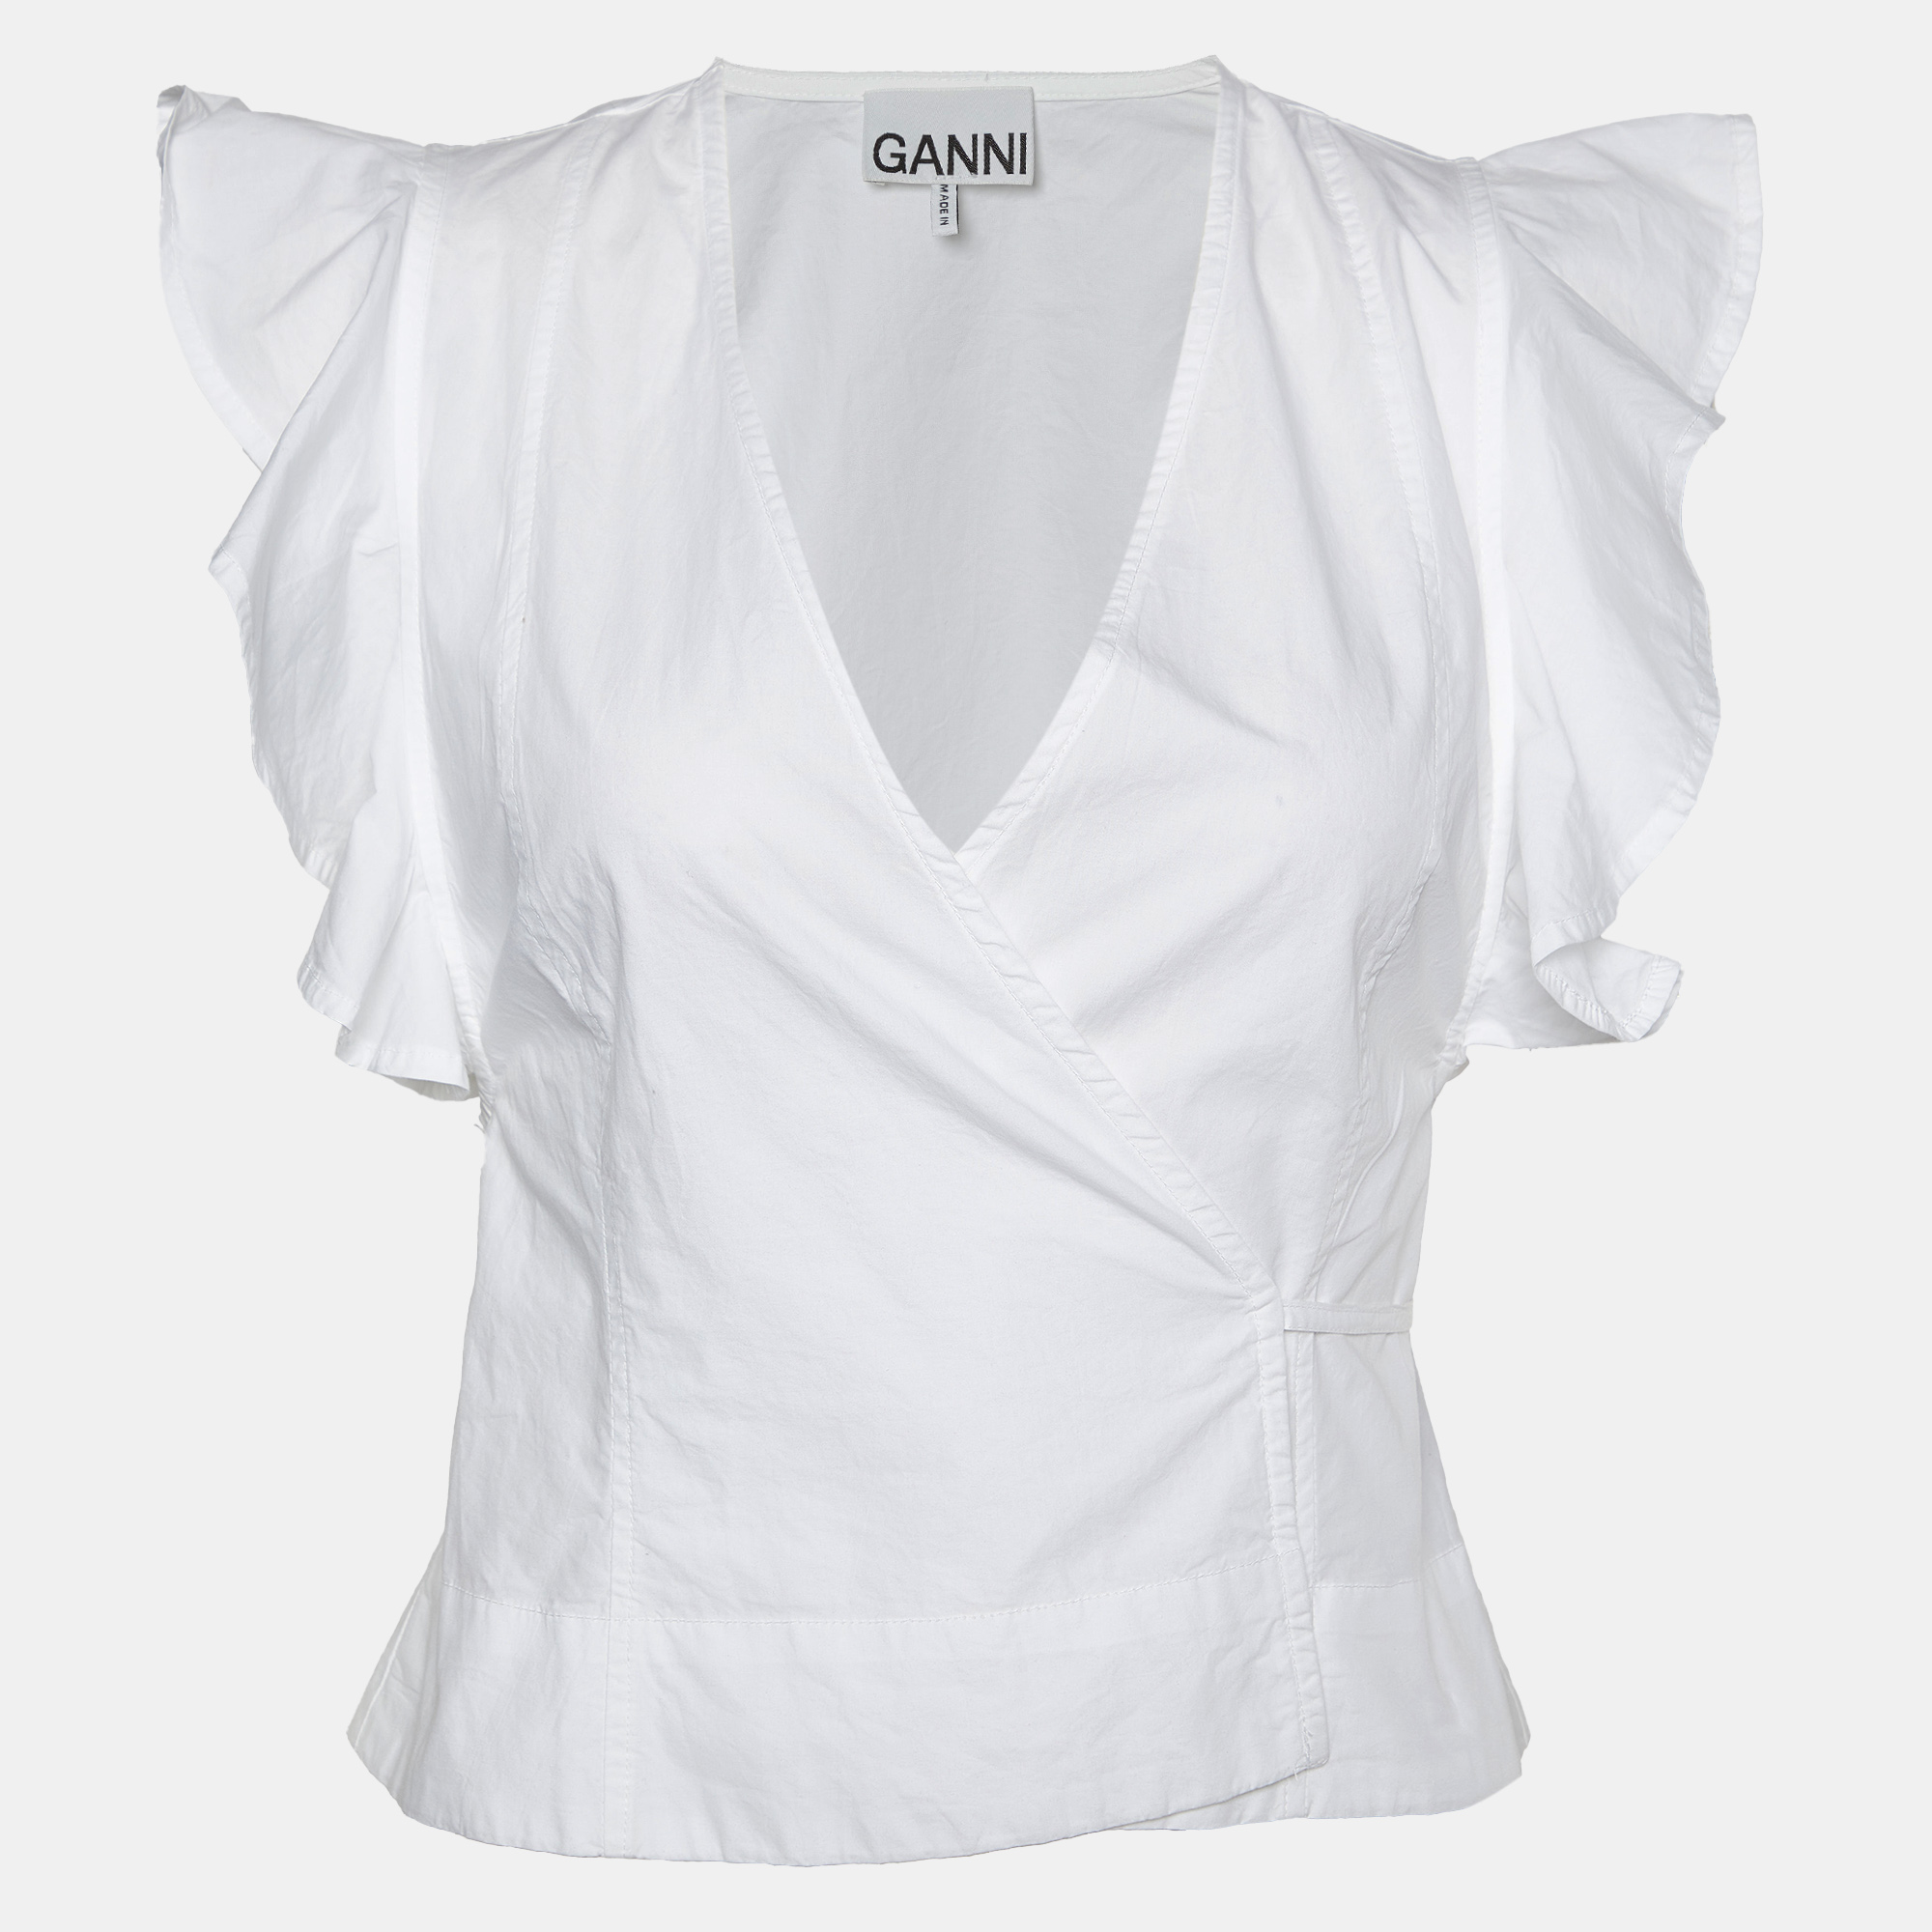 

Ganni White Cotton Cap Sleeves Wrap Top XXS